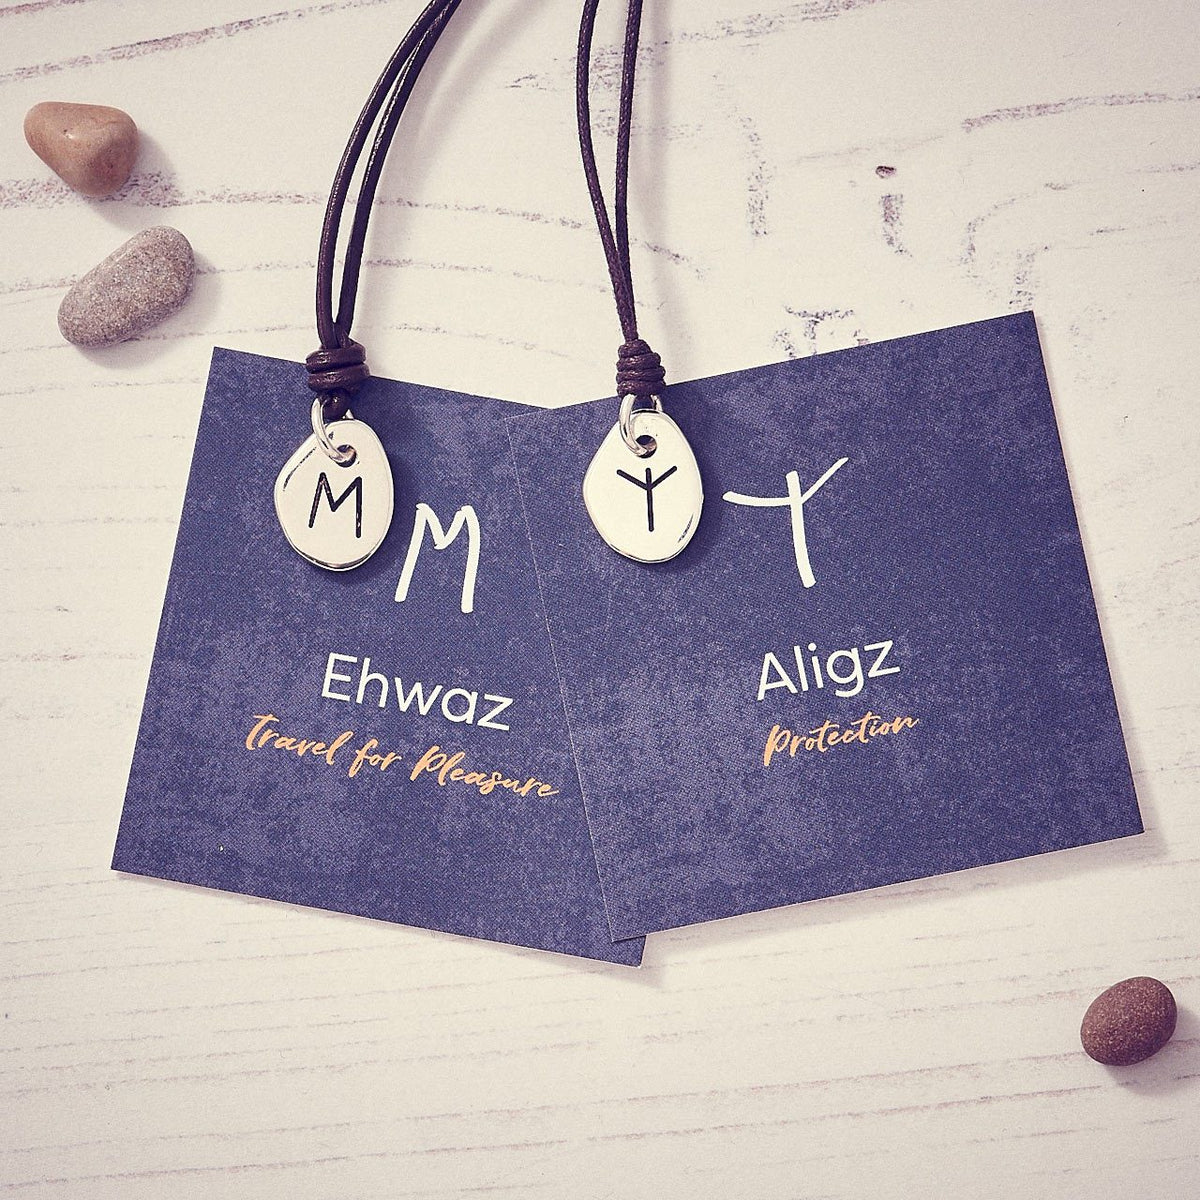 Travel Rune Ehwaz Aligz- Silver &amp; Leather pendant for men &amp; women - ideal travel gift